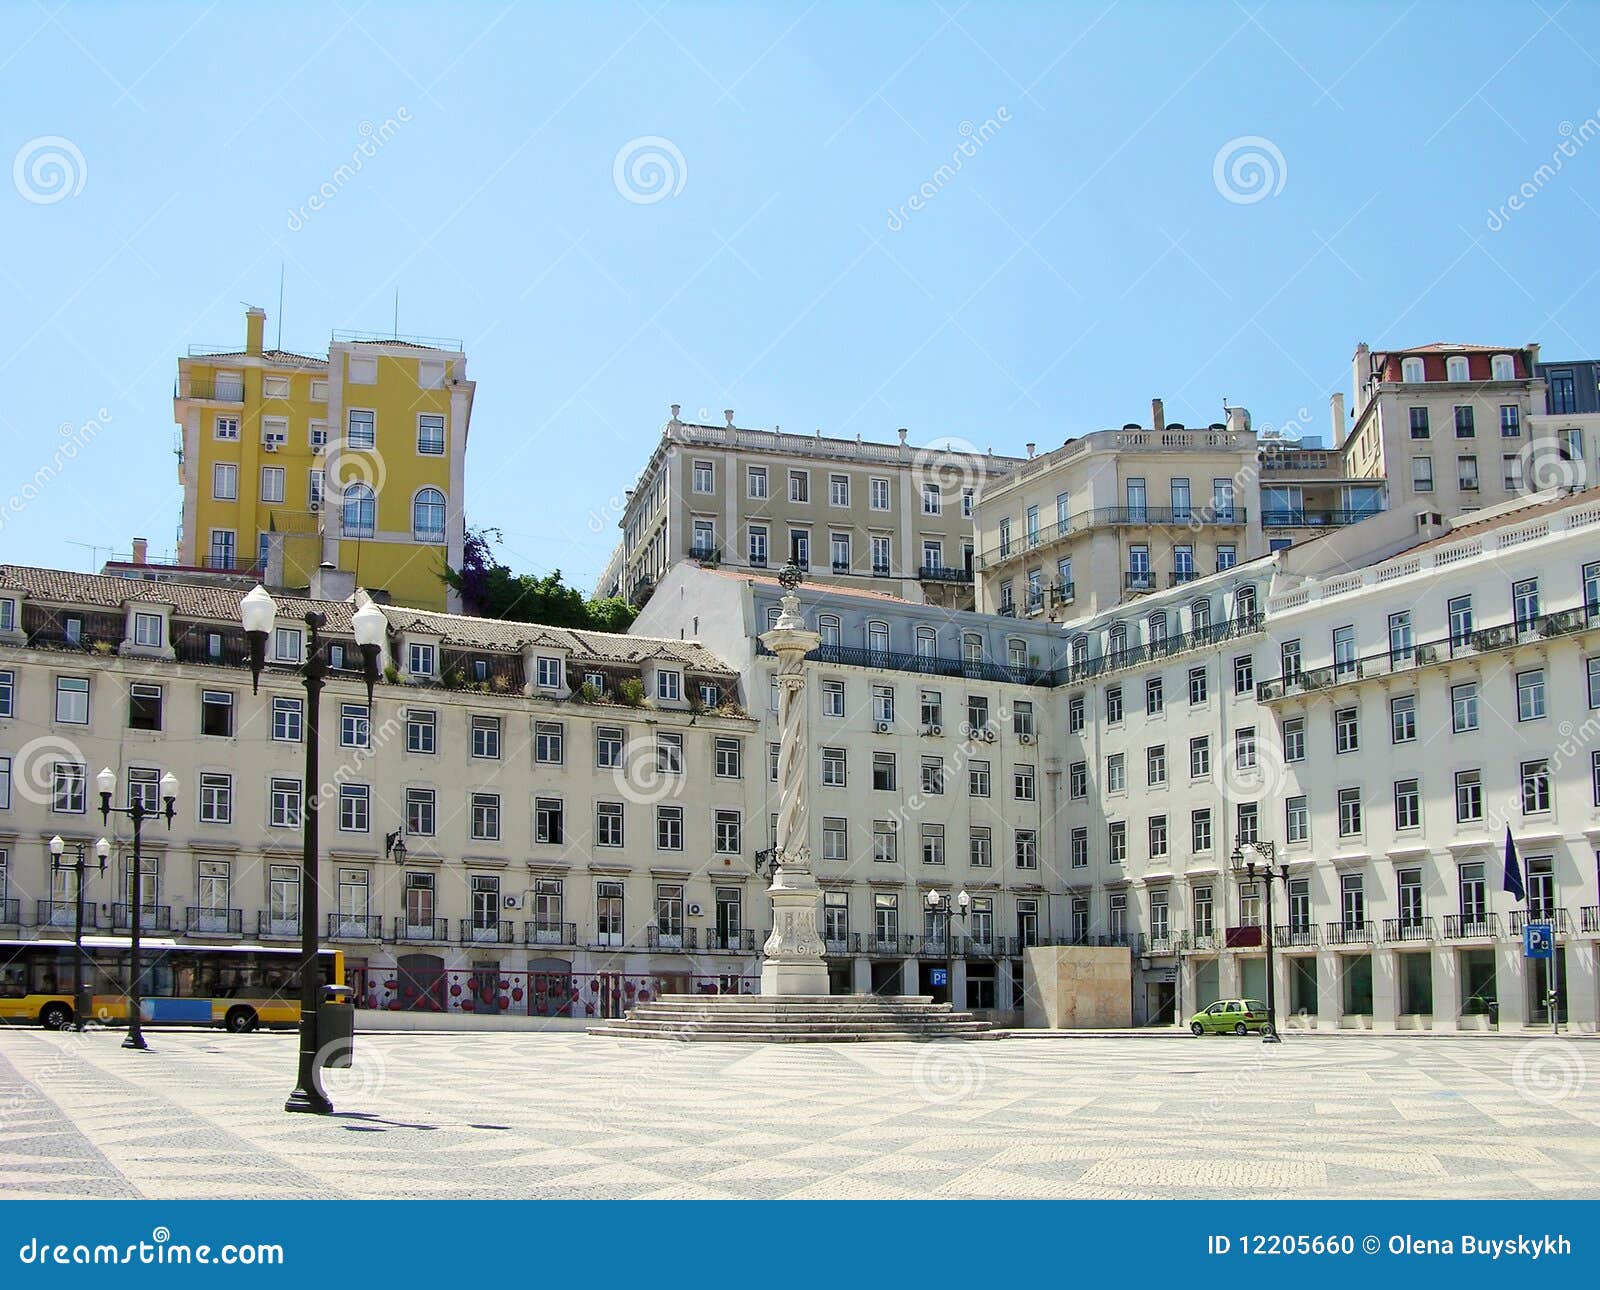 square do municipio, lisbon, portugal